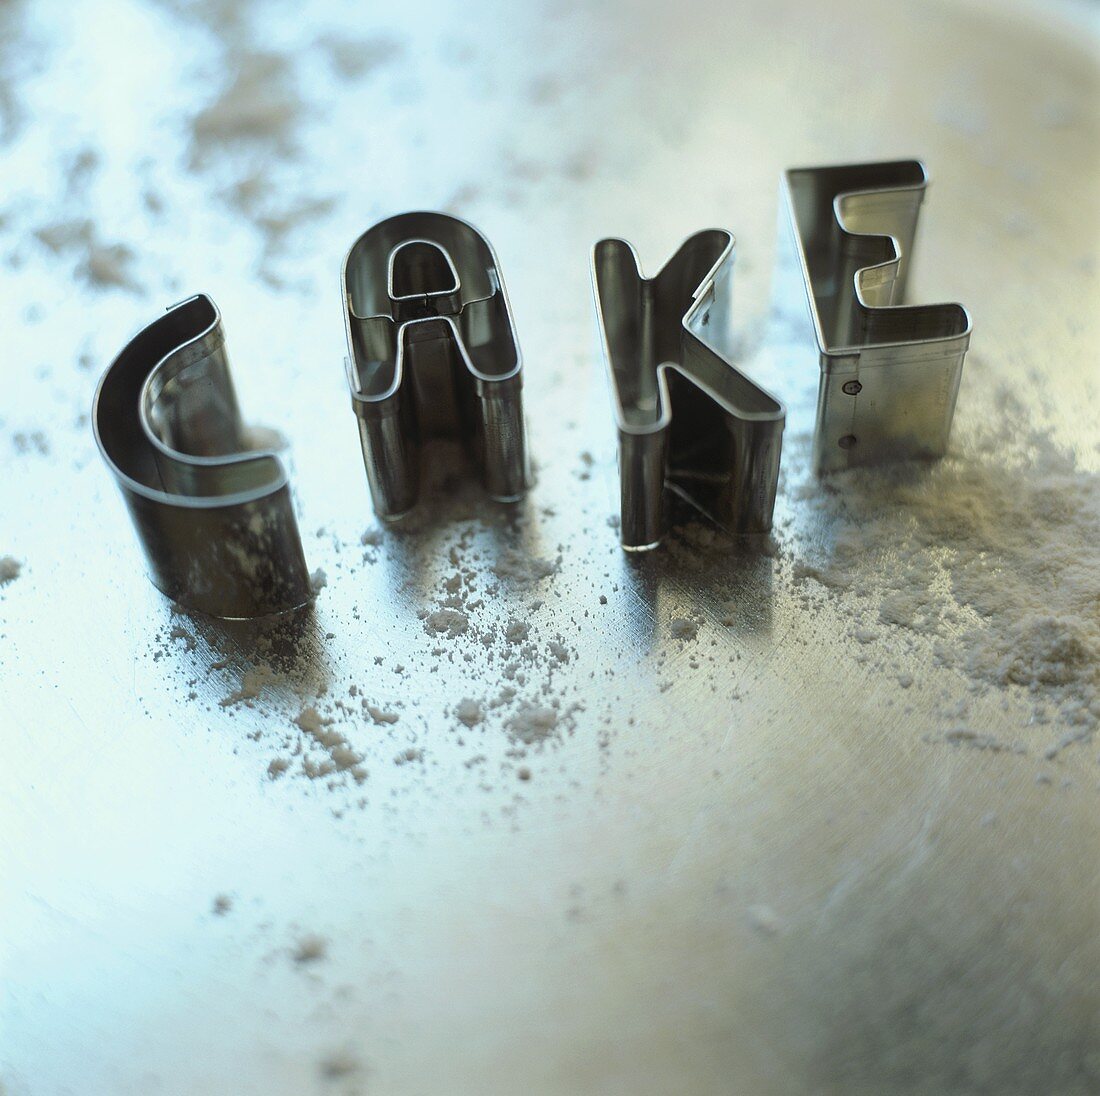 Ausstechformen bilden den Schriftzug 'Cake' (Kuchen)